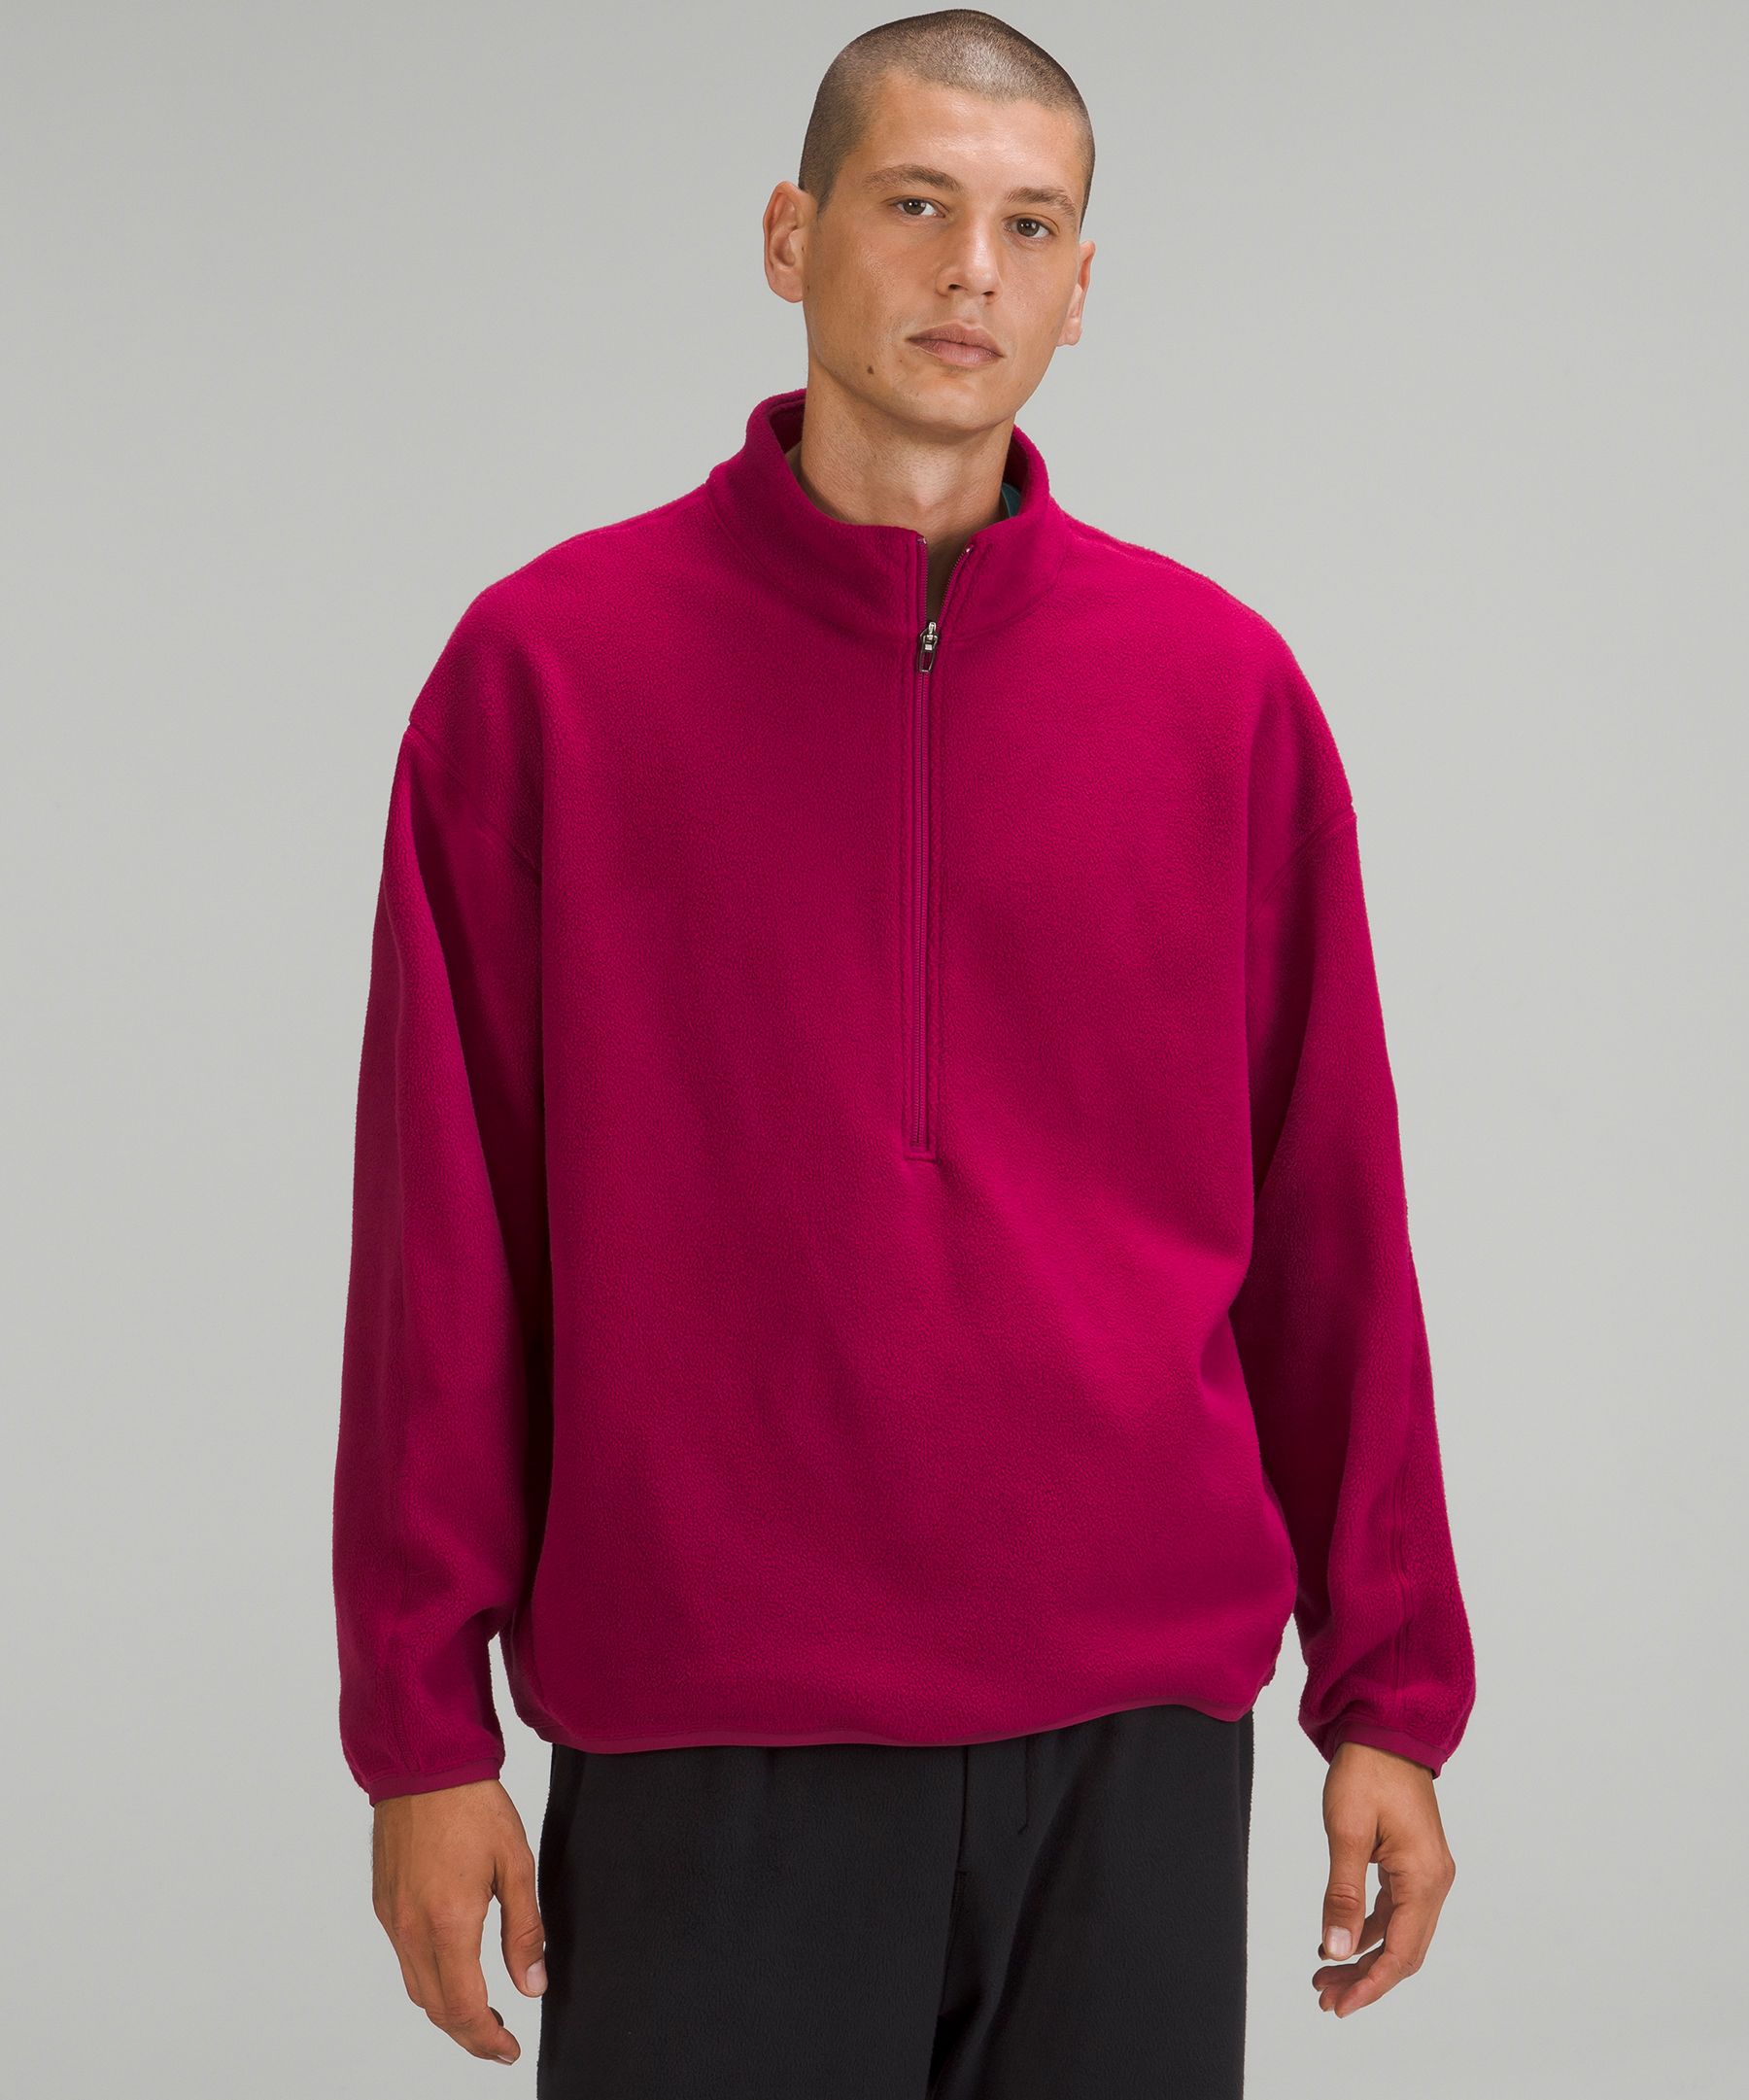 Hot Sale Fleece Half Zip Pullover Sweatshirt Blank Oversized Long